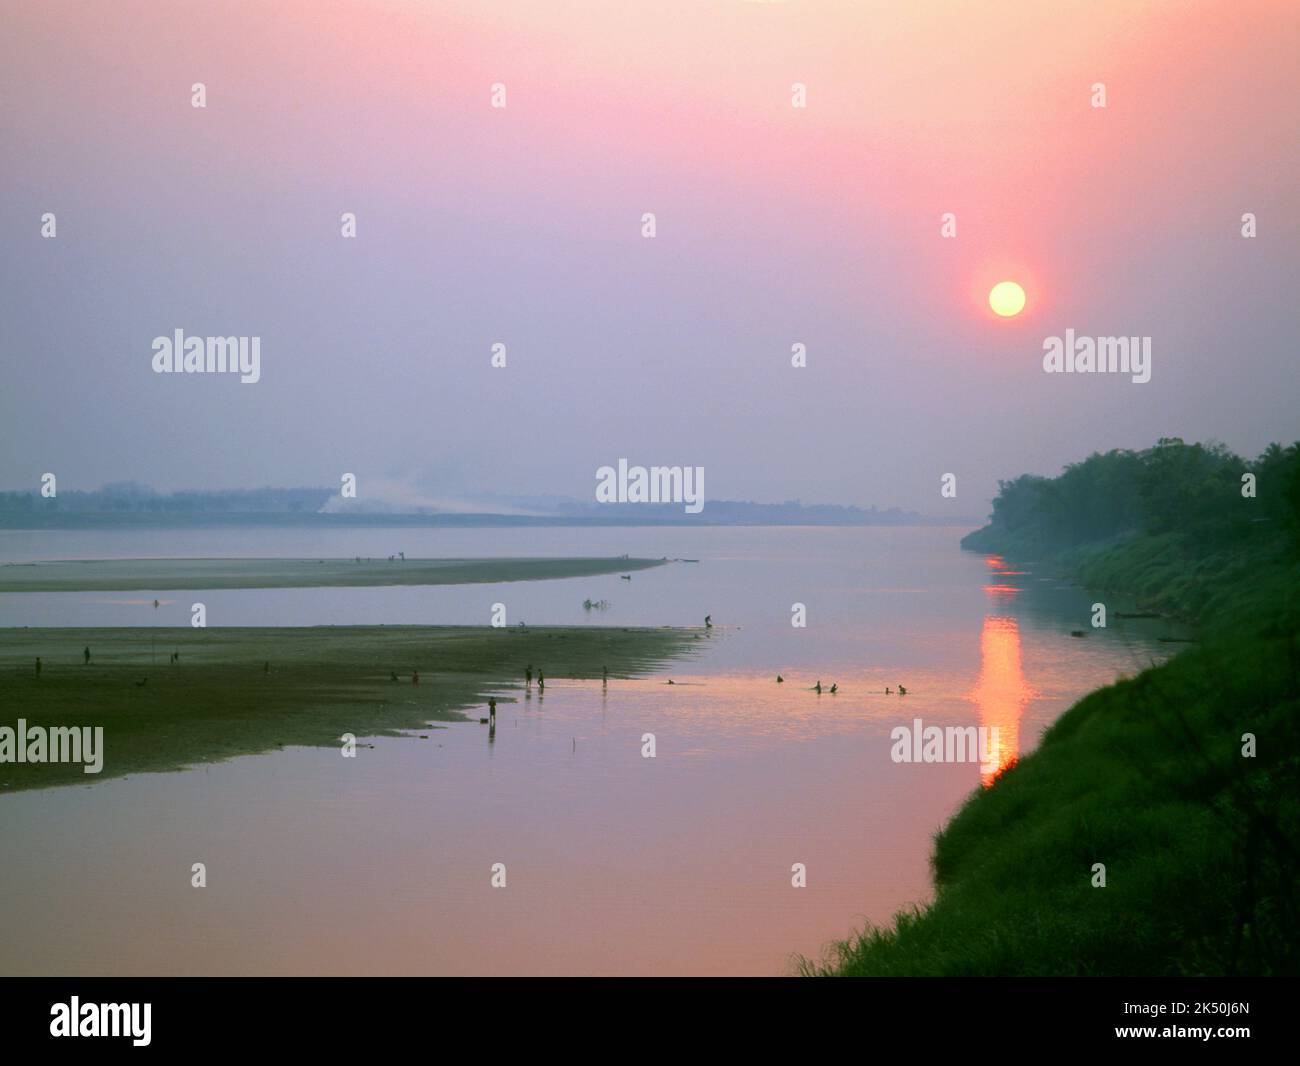 Laos: Pescatori e collezionisti di alghe fluviali lavorano mentre il sole tramonta sul fiume Mekong vicino a Vientiane. Il fiume Mekong è il fiume 12th più lungo del mondo. Dalla sorgente himalayana sull'altopiano tibetano, scorre per circa 4.350 km (2.703 miglia) attraverso la provincia cinese dello Yunnan, la Birmania, il Laos, la Thailandia, la Cambogia e il Vietnam, Infine drenando nel Mar Cinese Meridionale. Foto Stock